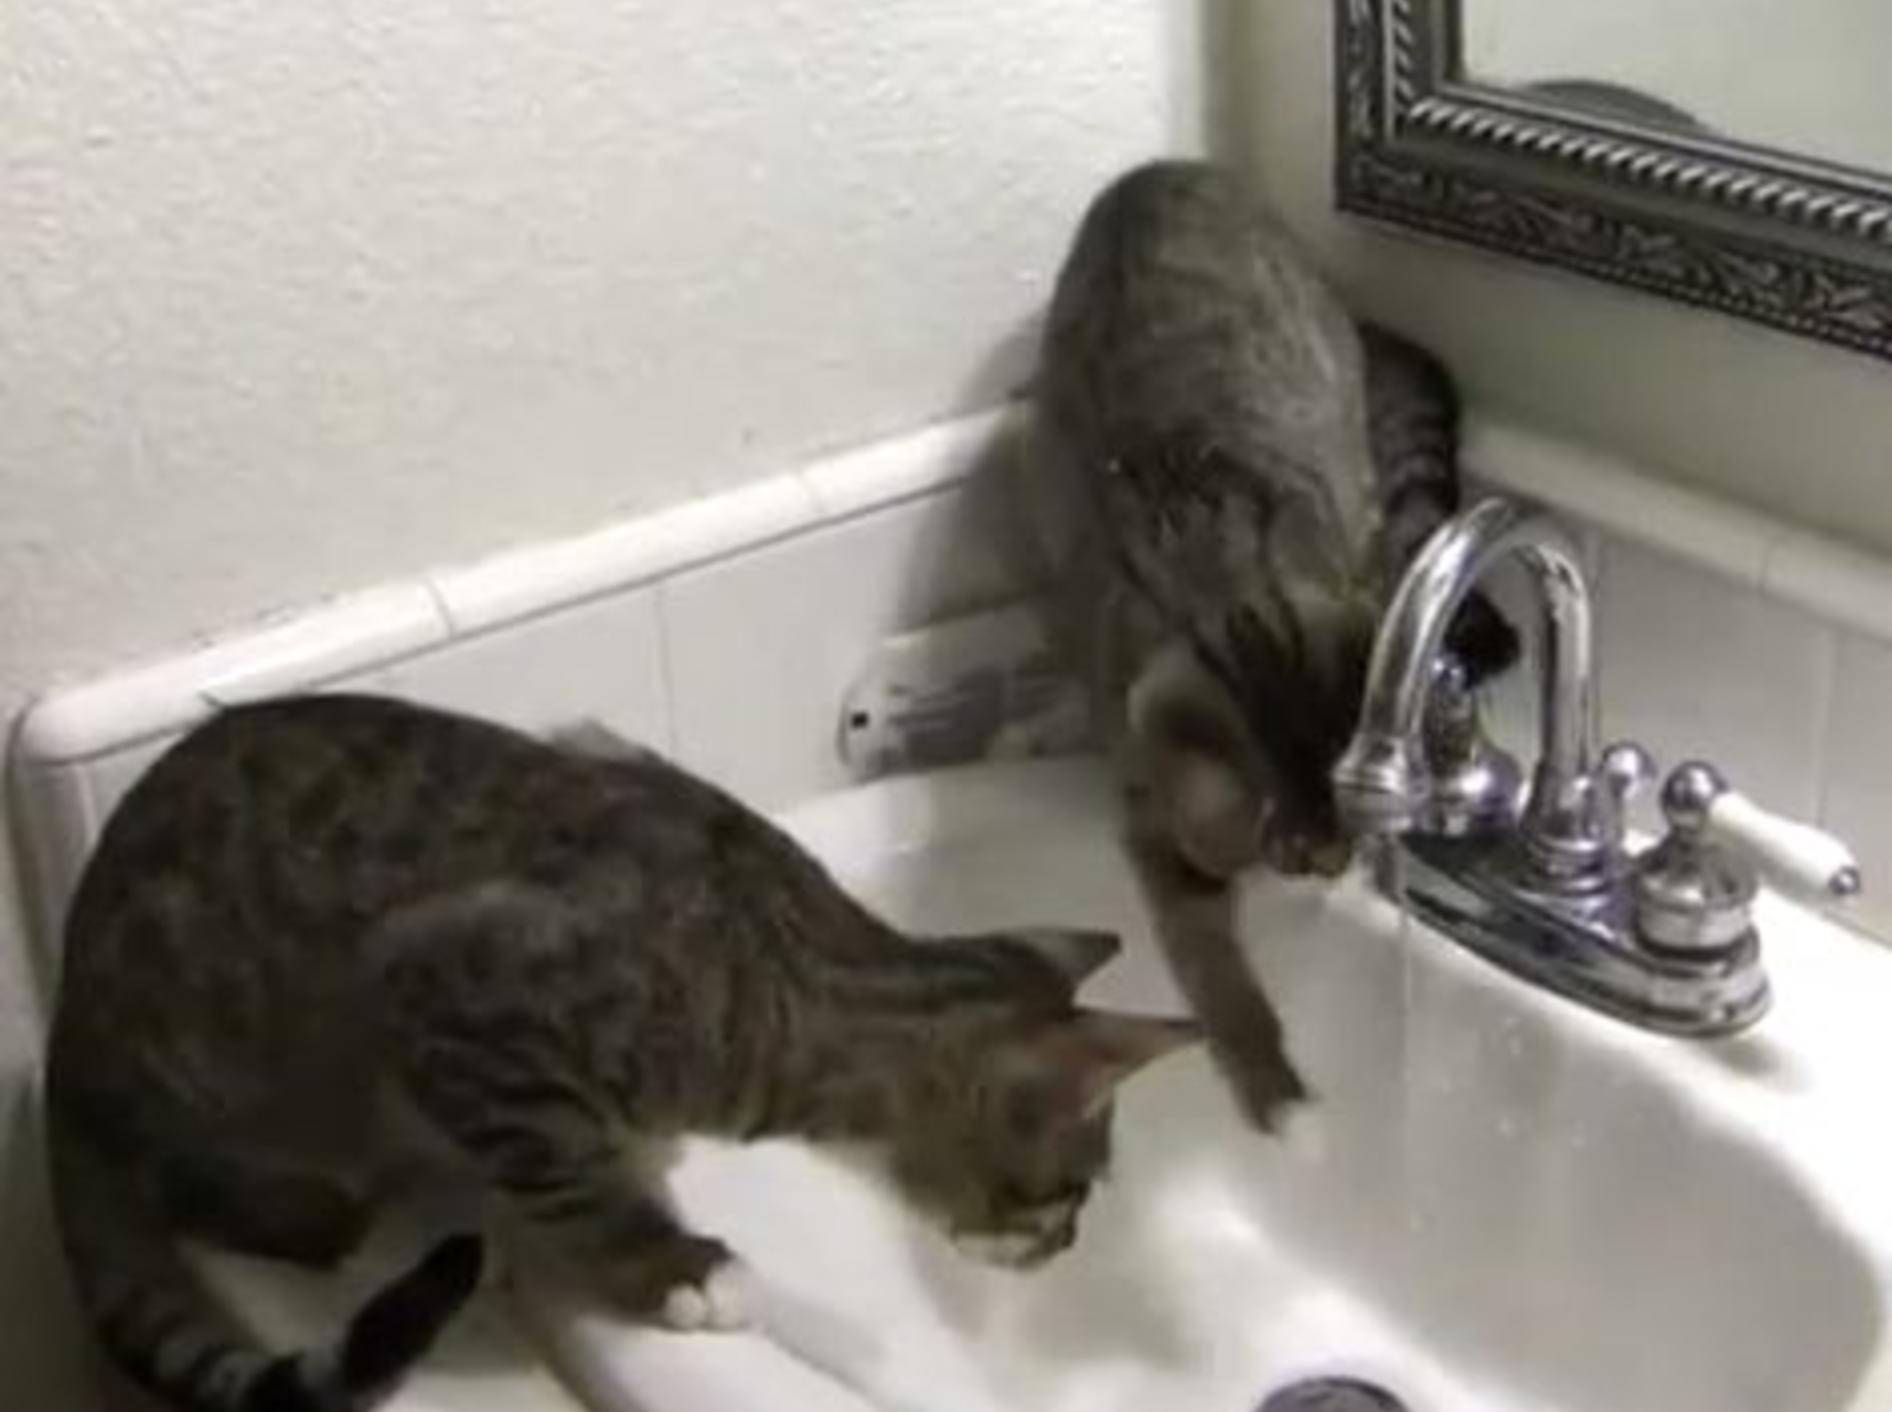 Katzen spielen in Waschbecken: Compilation – Bild: Youtube / CrazyFunnyStuffCFS